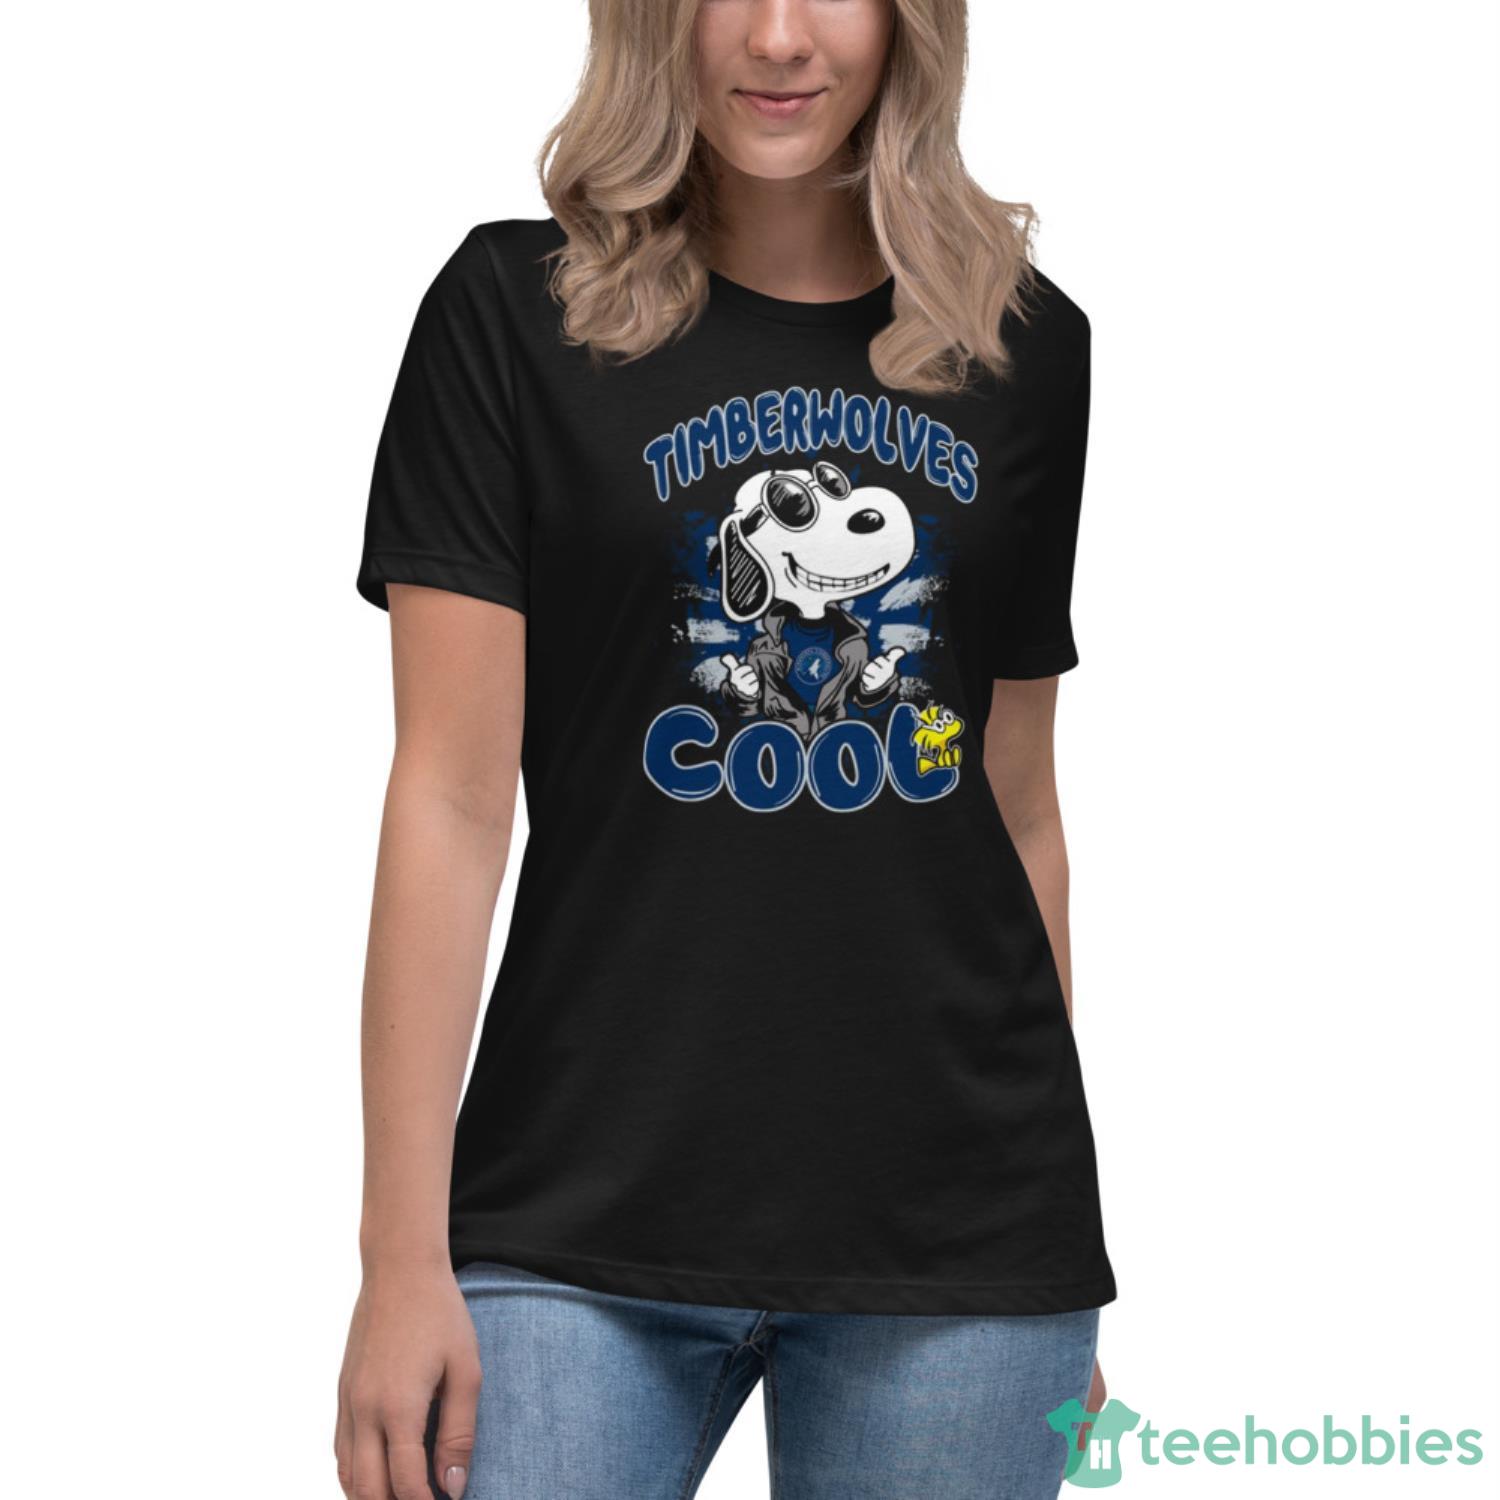 NBA Basketball Minnesota Timberwolves Cool Snoopy Shirt T Shirt - Womens Relaxed Short Sleeve Jersey Tee